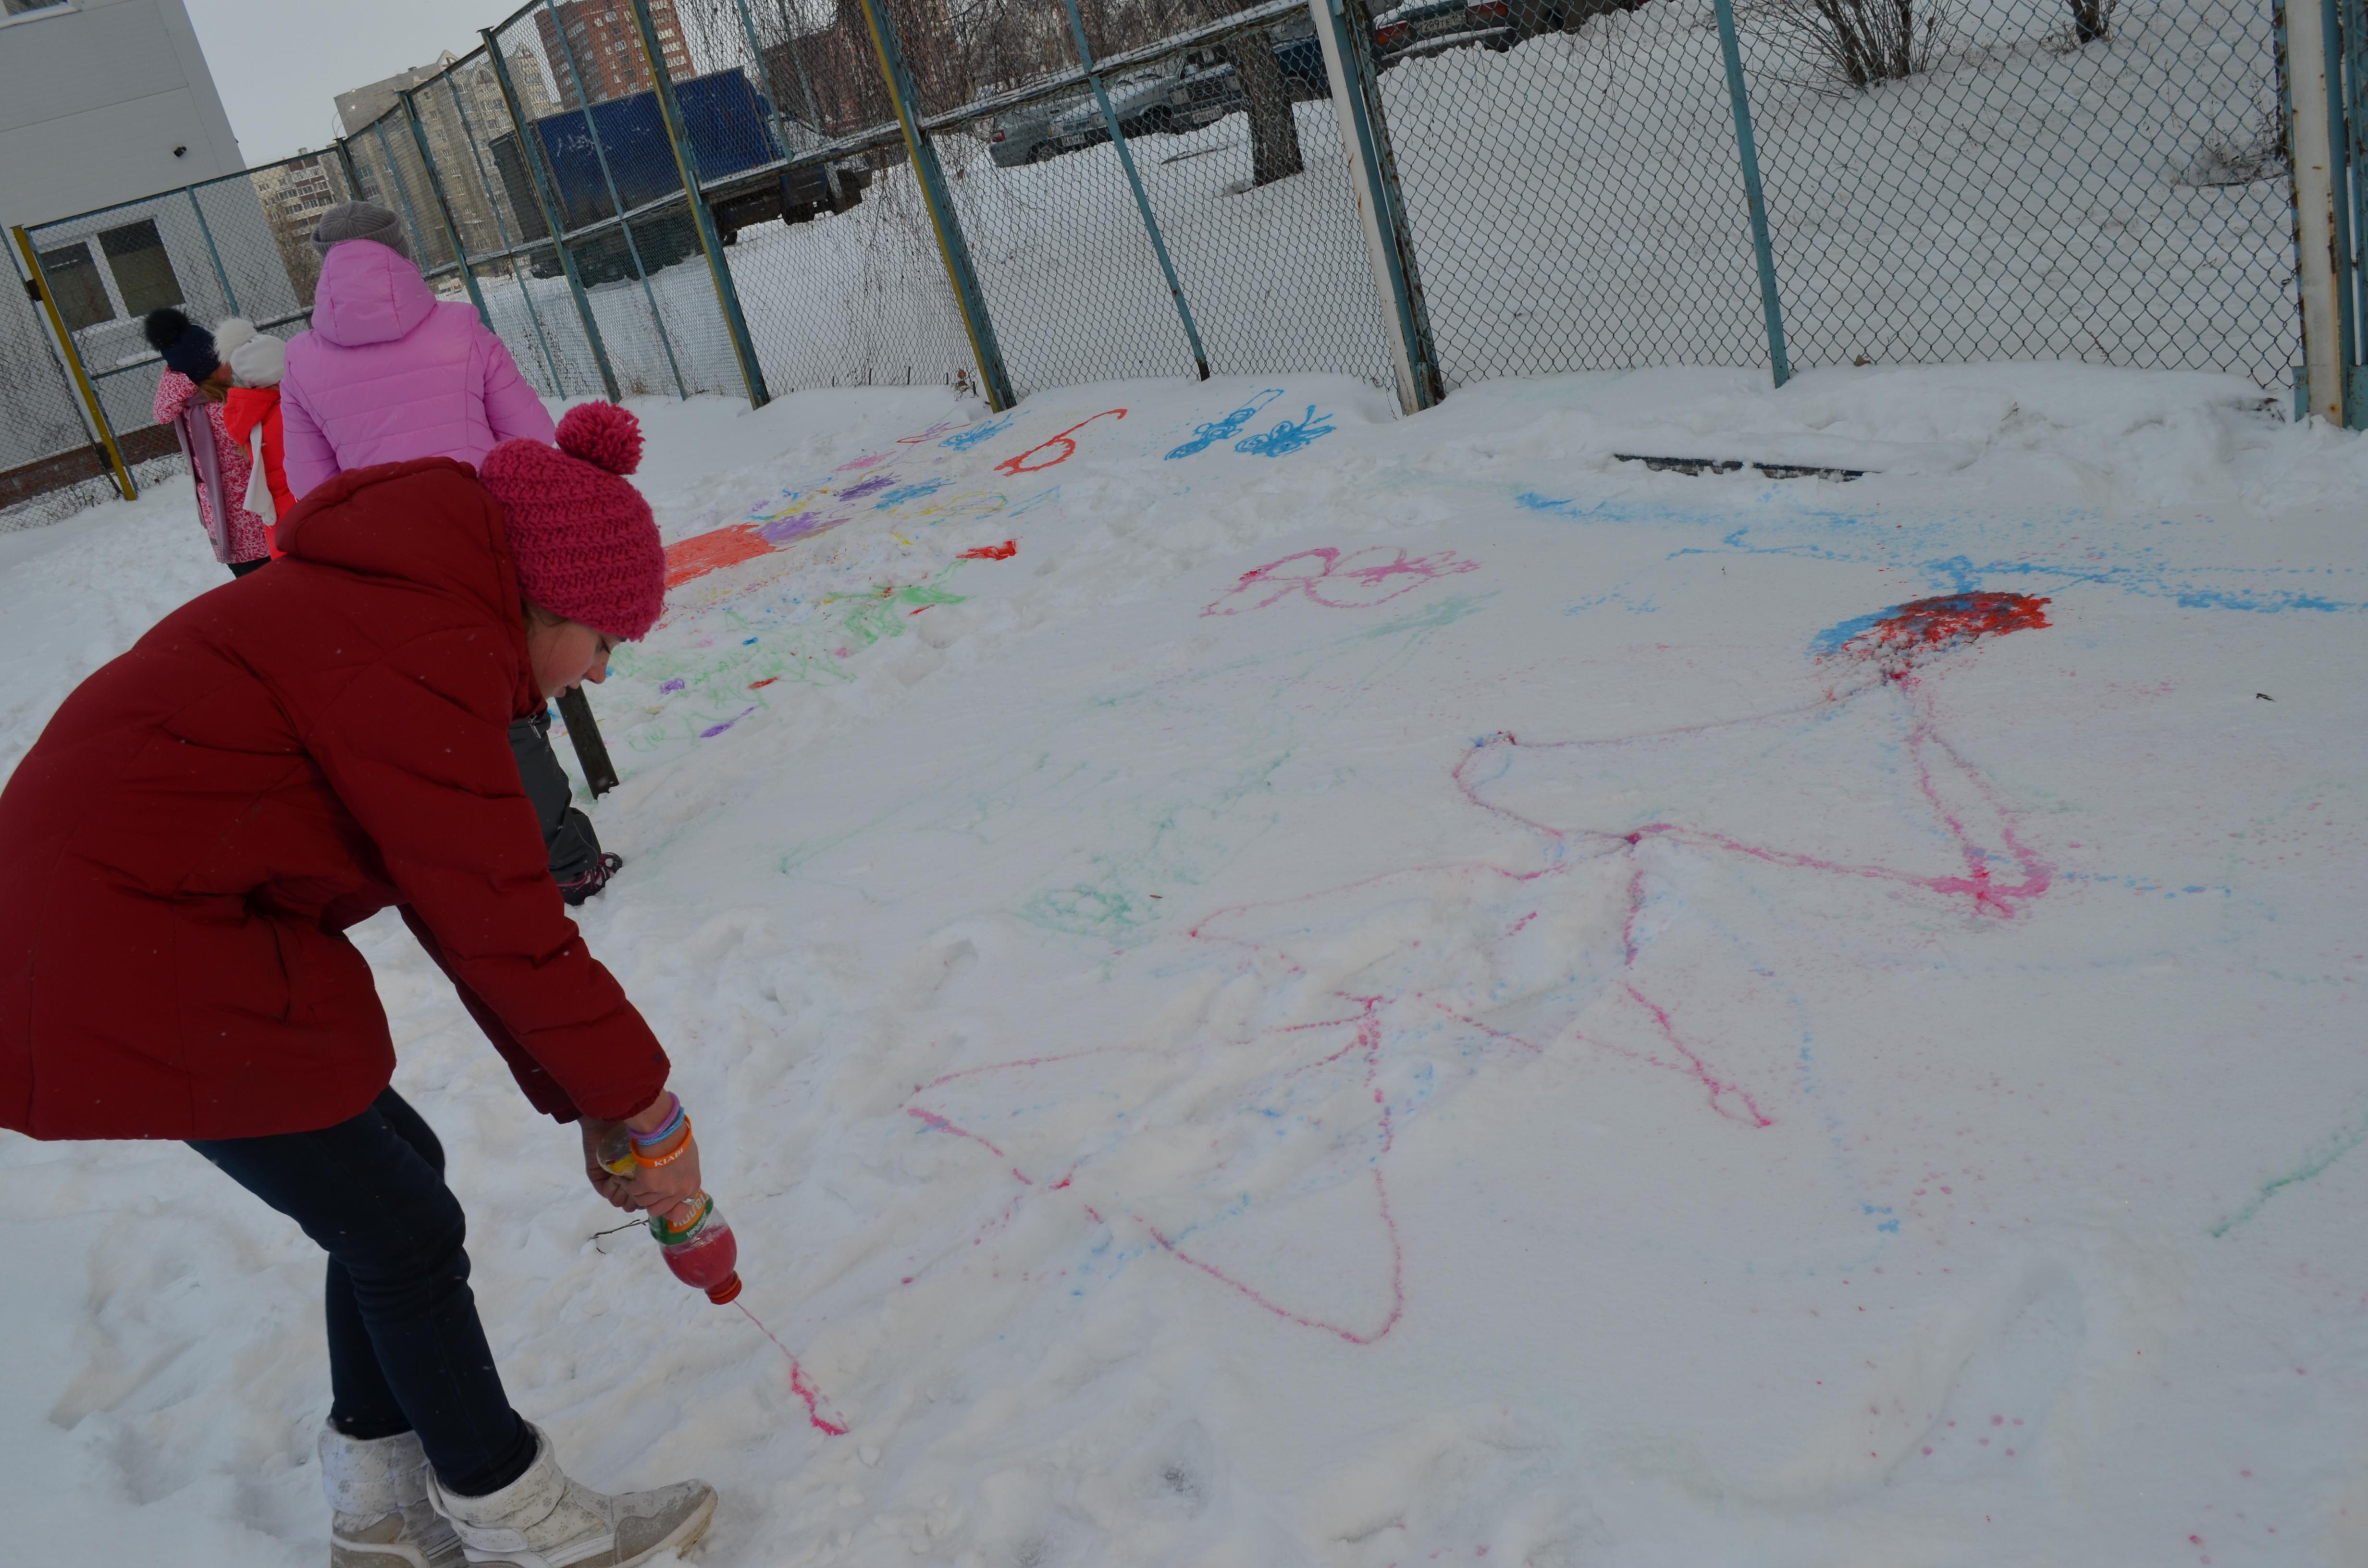 конкурс рисунка на снегу "Разноцветный снег 2016"